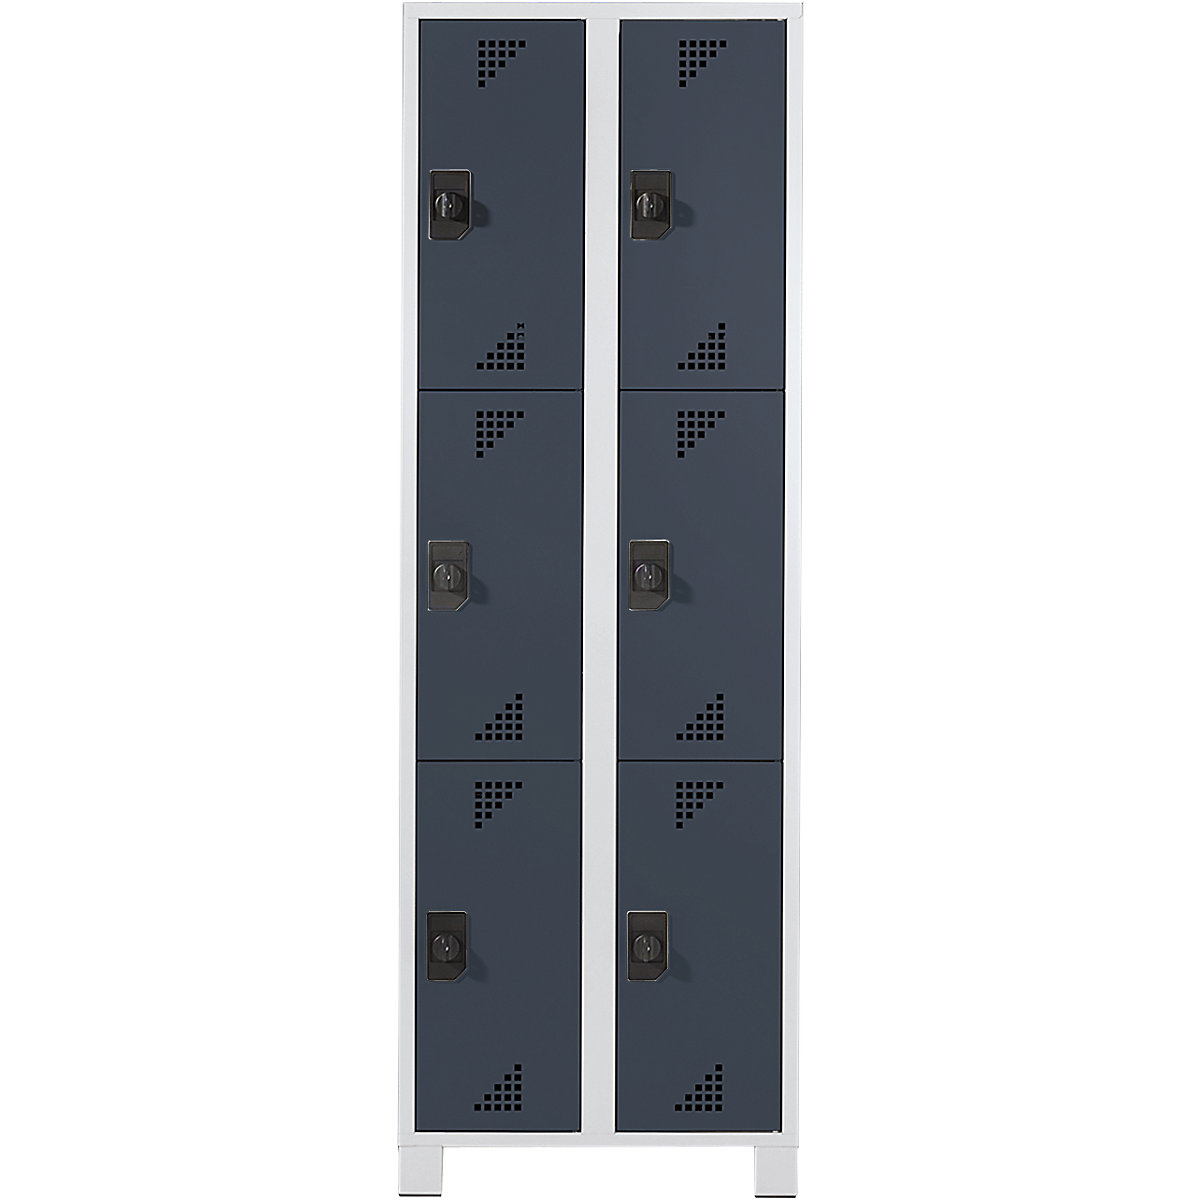 EUROKRAFTpro – Vestiaire multicases, hauteur cases 558 mm, h x l x p 1800 x 800 x 500 mm, 6 compartiments, corps gris clair, portes anthracite